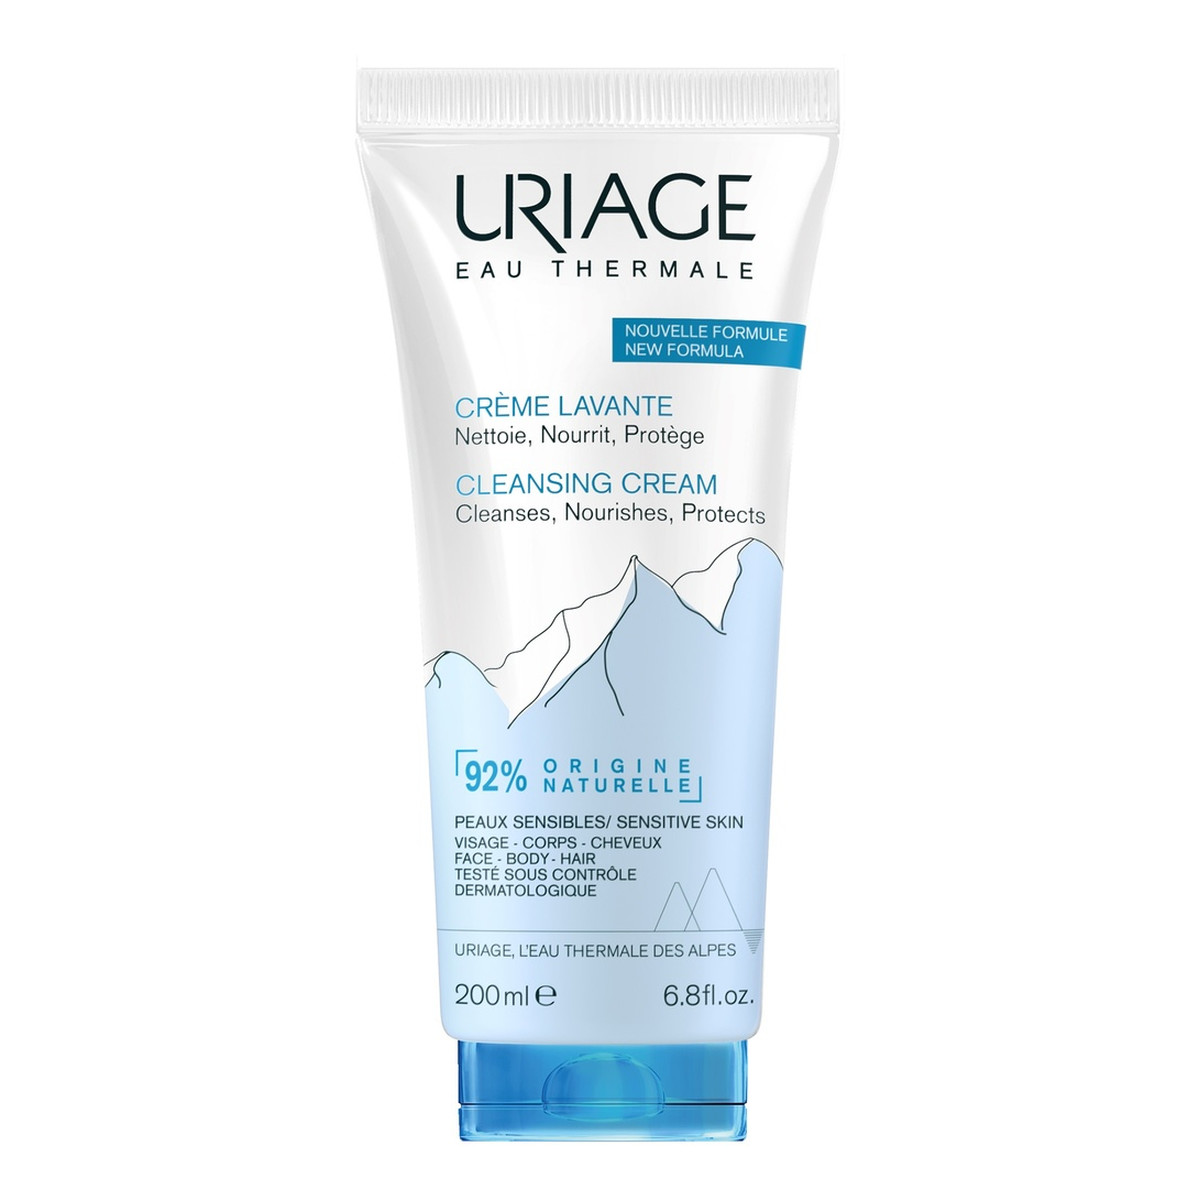 Uriage Eau Thermale Cleansing Cream kremowy żel oczyszczający 200ml